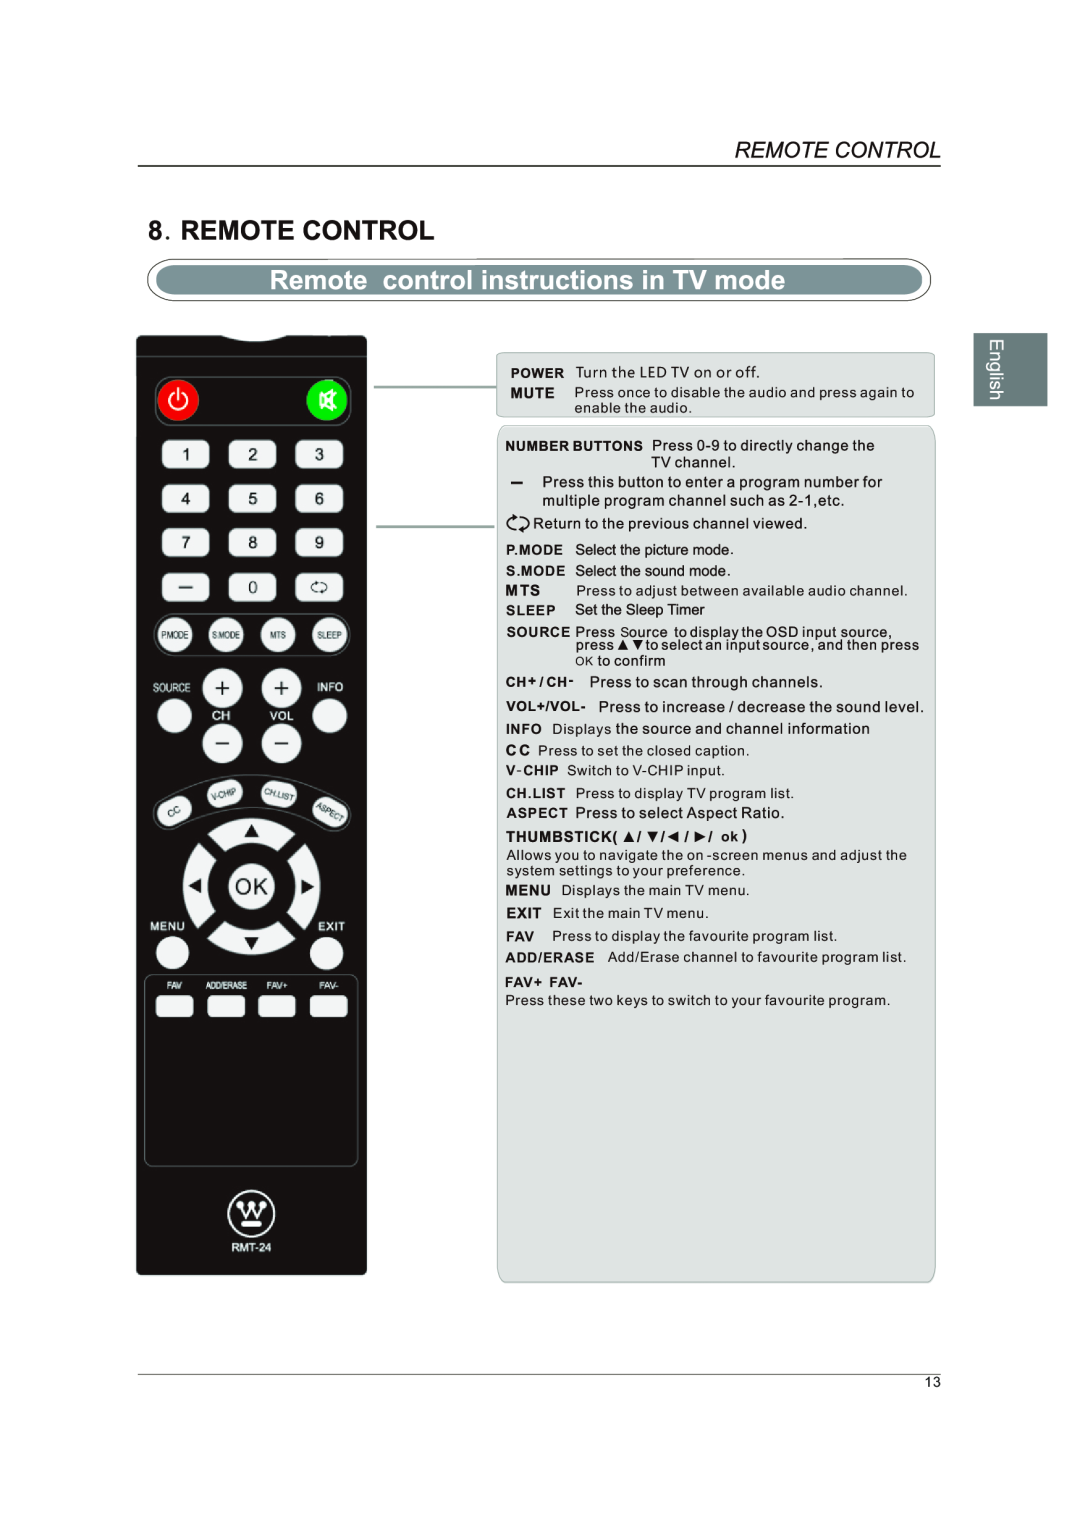 Westinghouse DWM40F1A1 manual P.Mode S.Mode, Sleep, Source, ASPECT ok, Fav+ Fav 